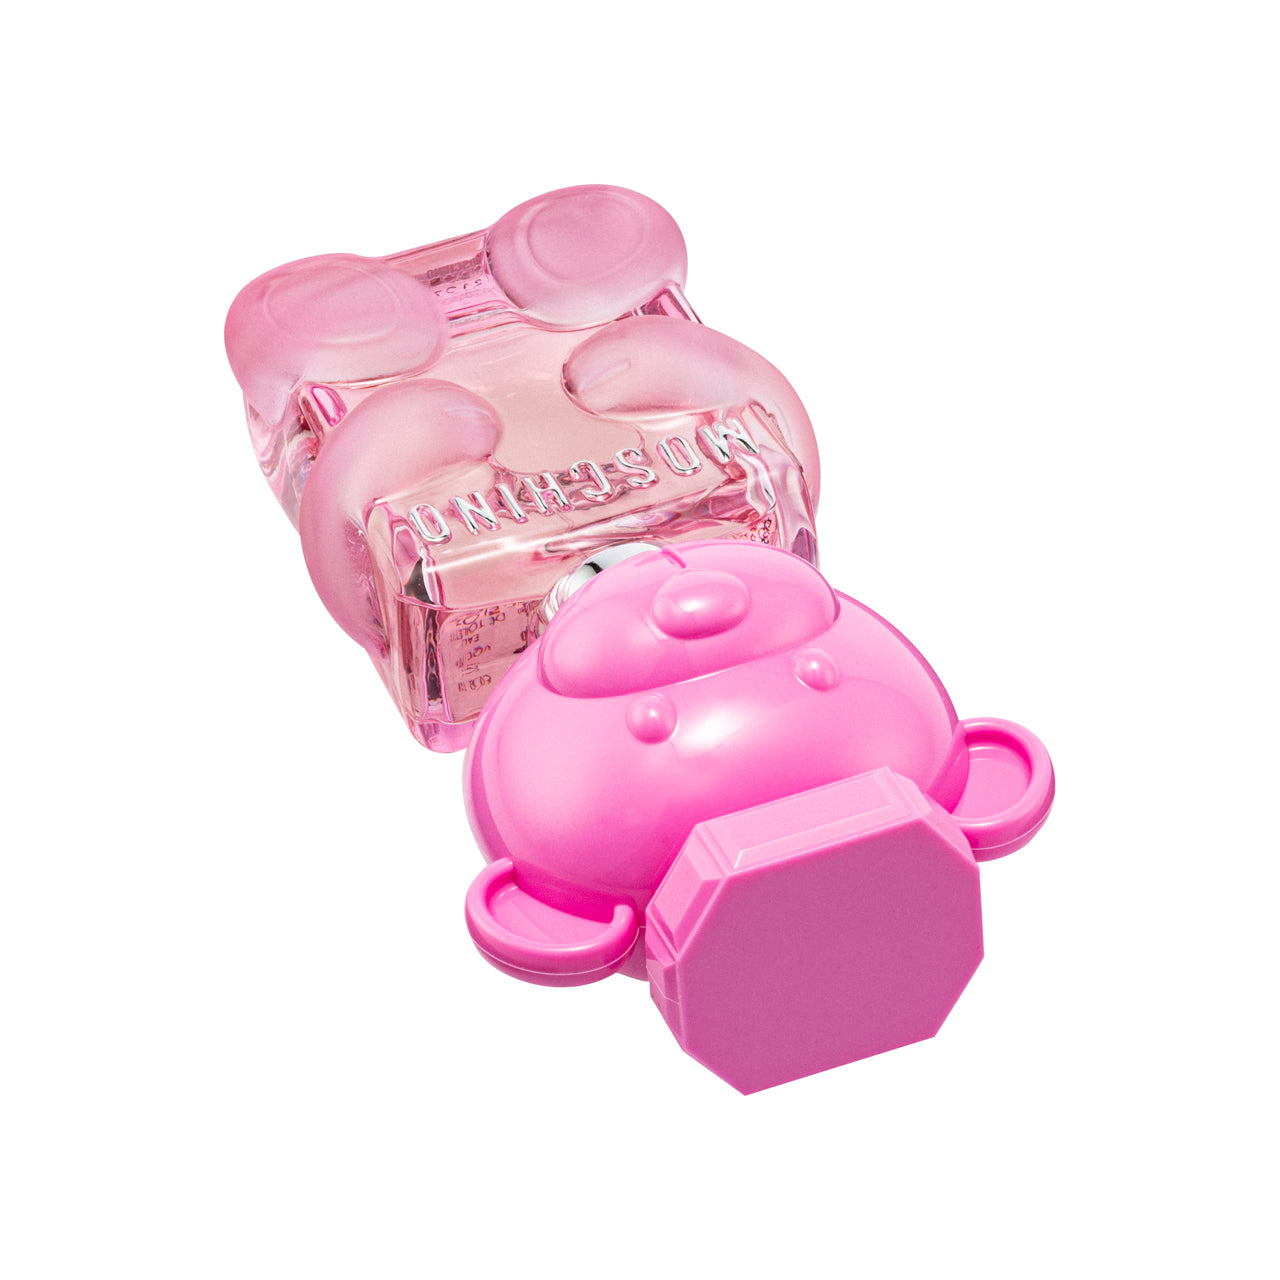 Moschino Toy 2 Bubble Gum Eau De Toilette